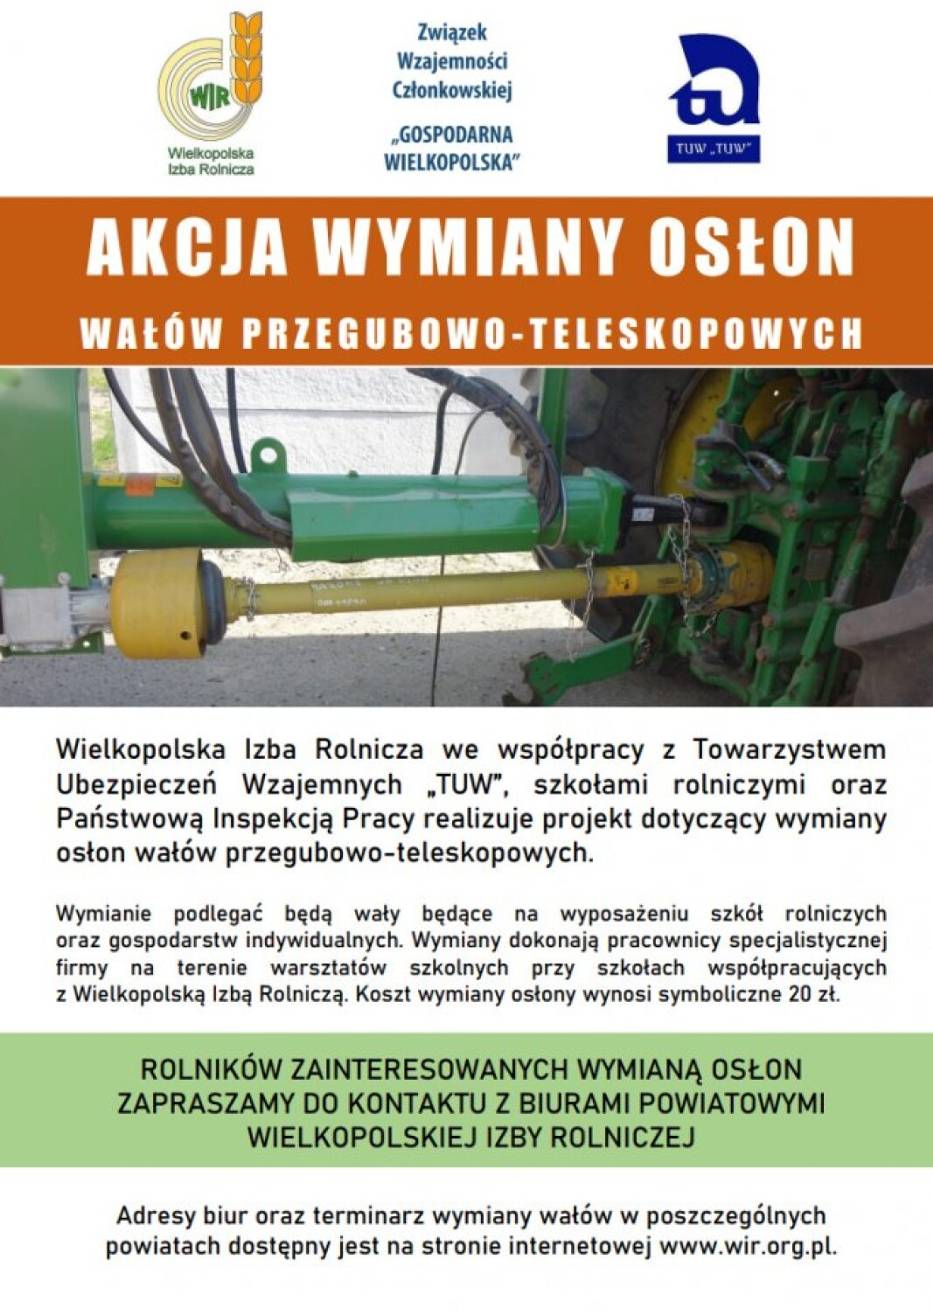 Rada Powiatowa Wielkopolskiej Izby Rolniczej w Śremie zaprasza na akcję wymiany osłon wałów przegubowo-teleskopowych